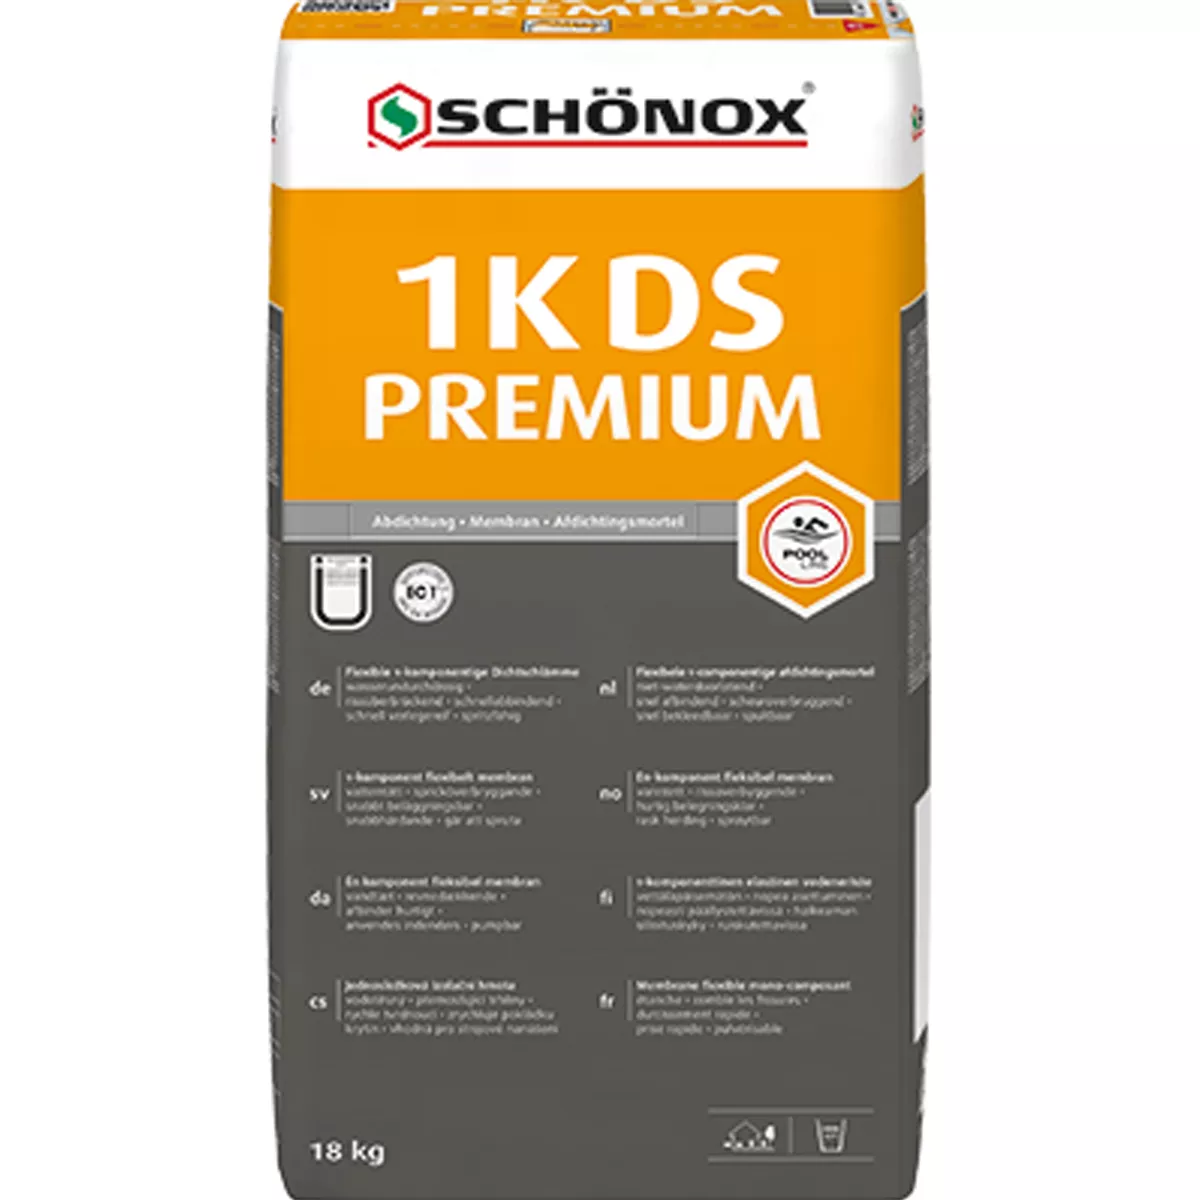 Schönox 1K-DS PREMIUM - Tætningsopslæmning / Tætning (18 Kg)